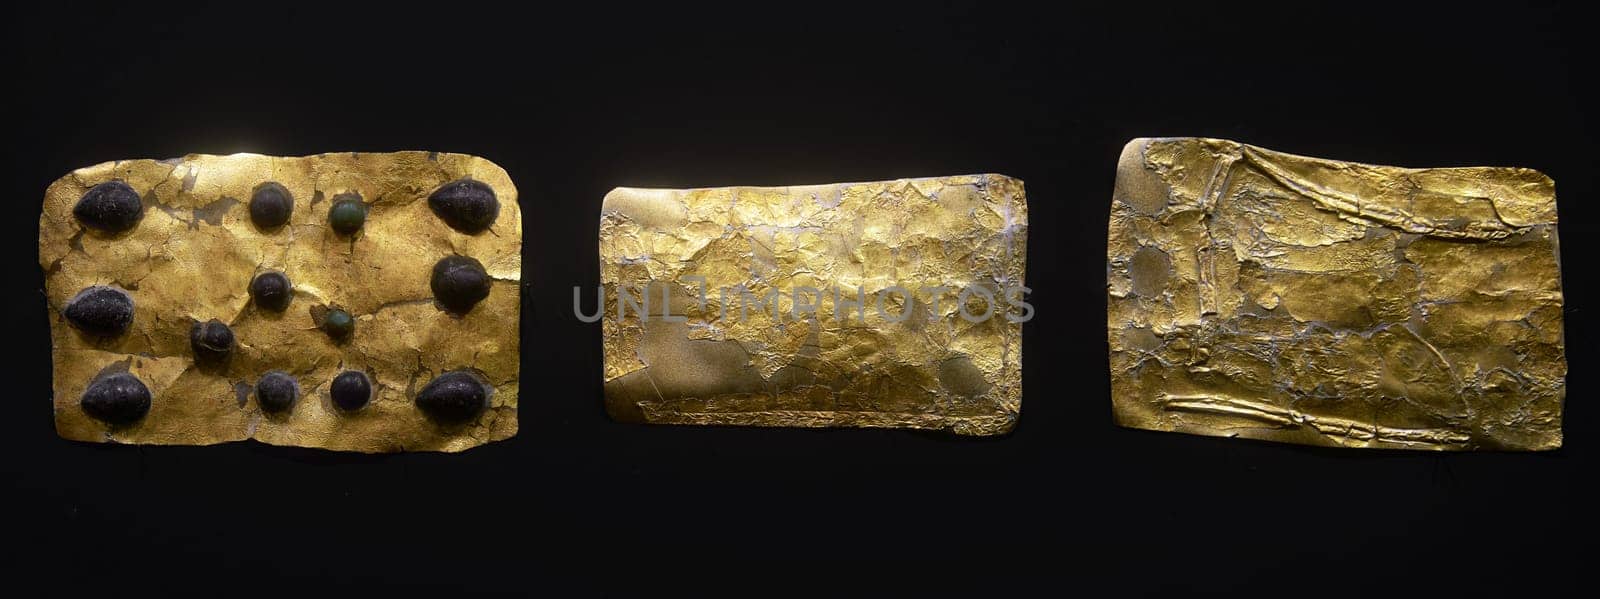 Ancient golden objects of the Scythians. Scythian Gold, Treasures of Eurasian Nomads. Golden Scythian Artifact, belt decoration. 07.07.21, Rostov region, Russia by EvgeniyQW